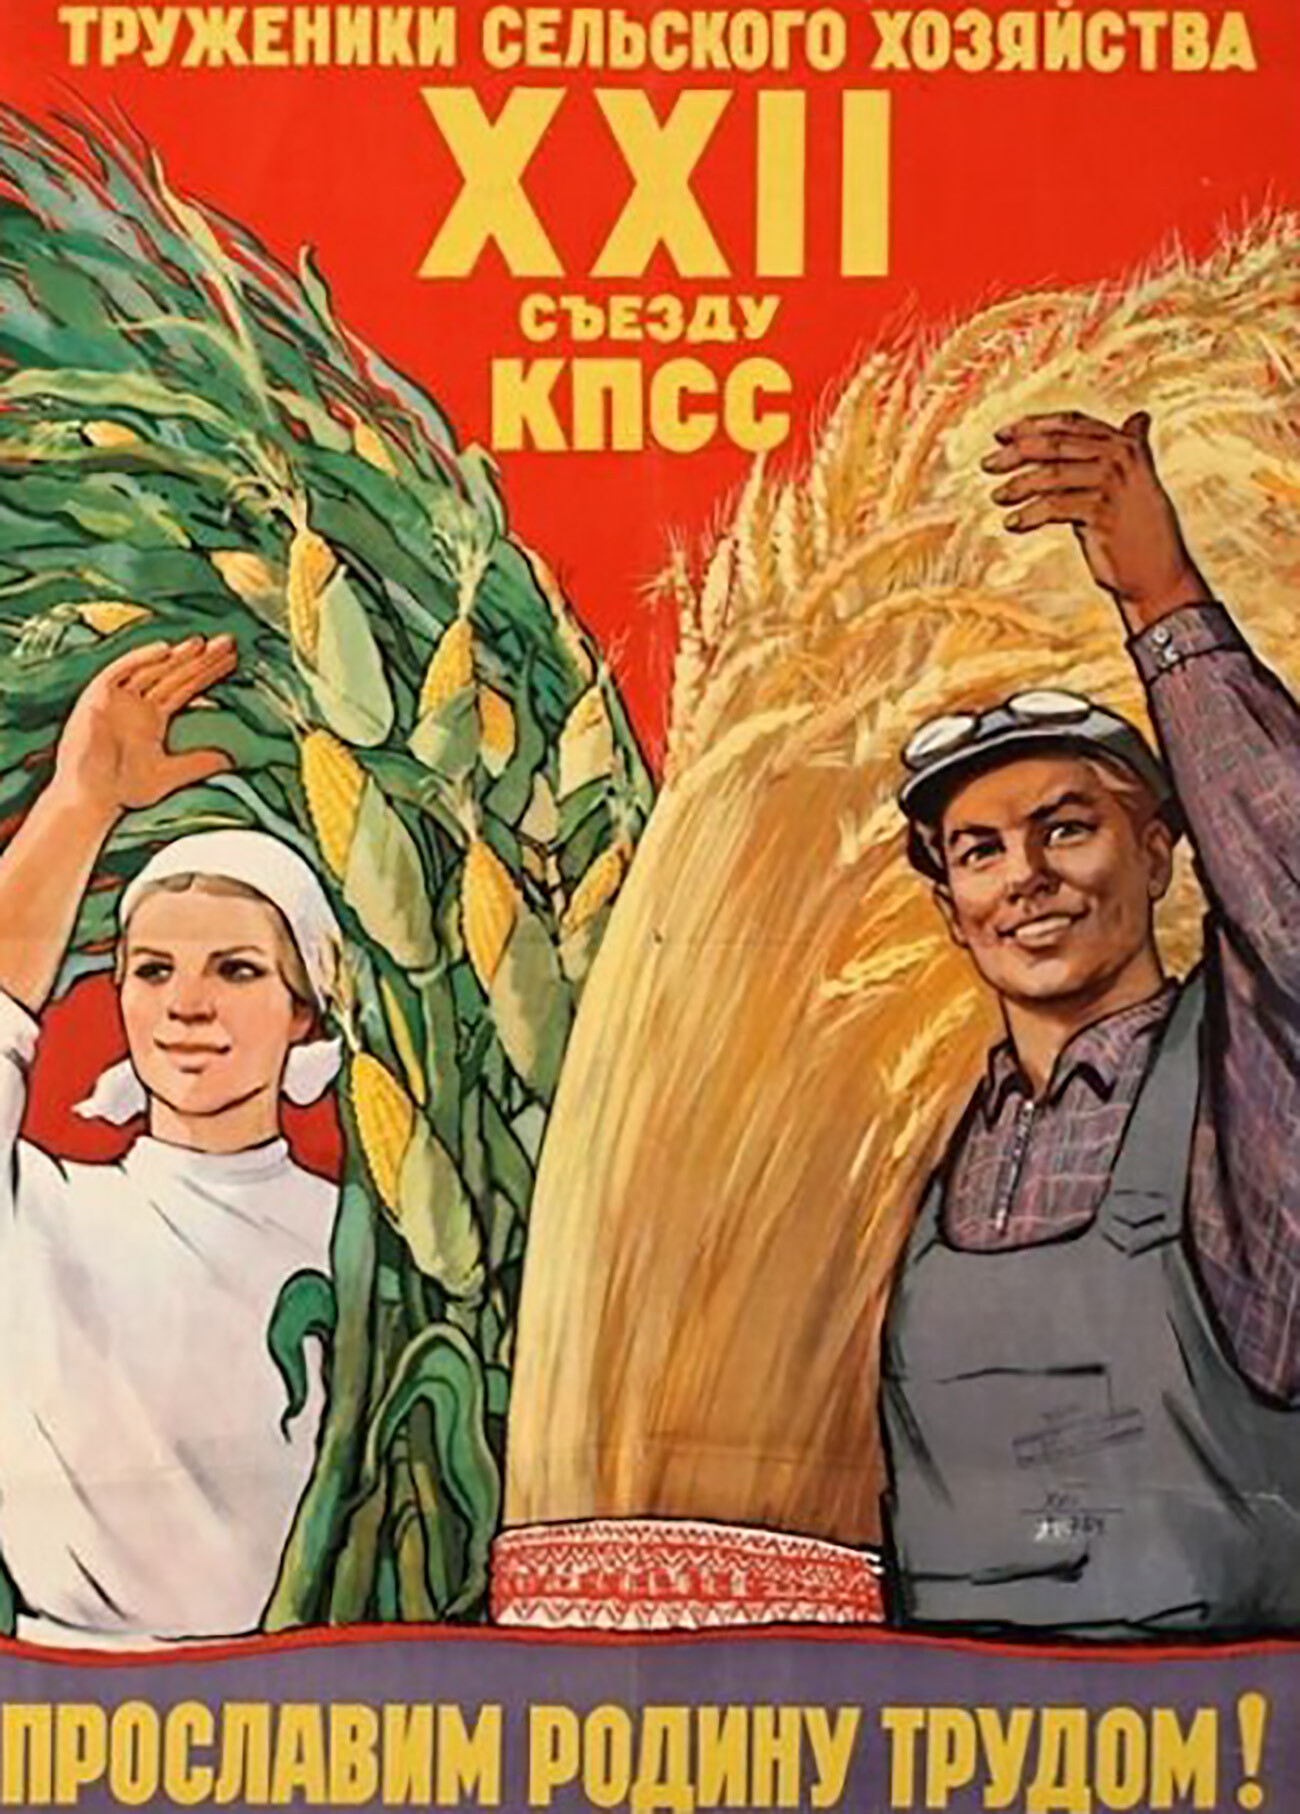 Ouvriers agricoles ! – XXIIe Congrès du Parti communiste de l'Union soviétique – Glorifions la patrie avec le travail !